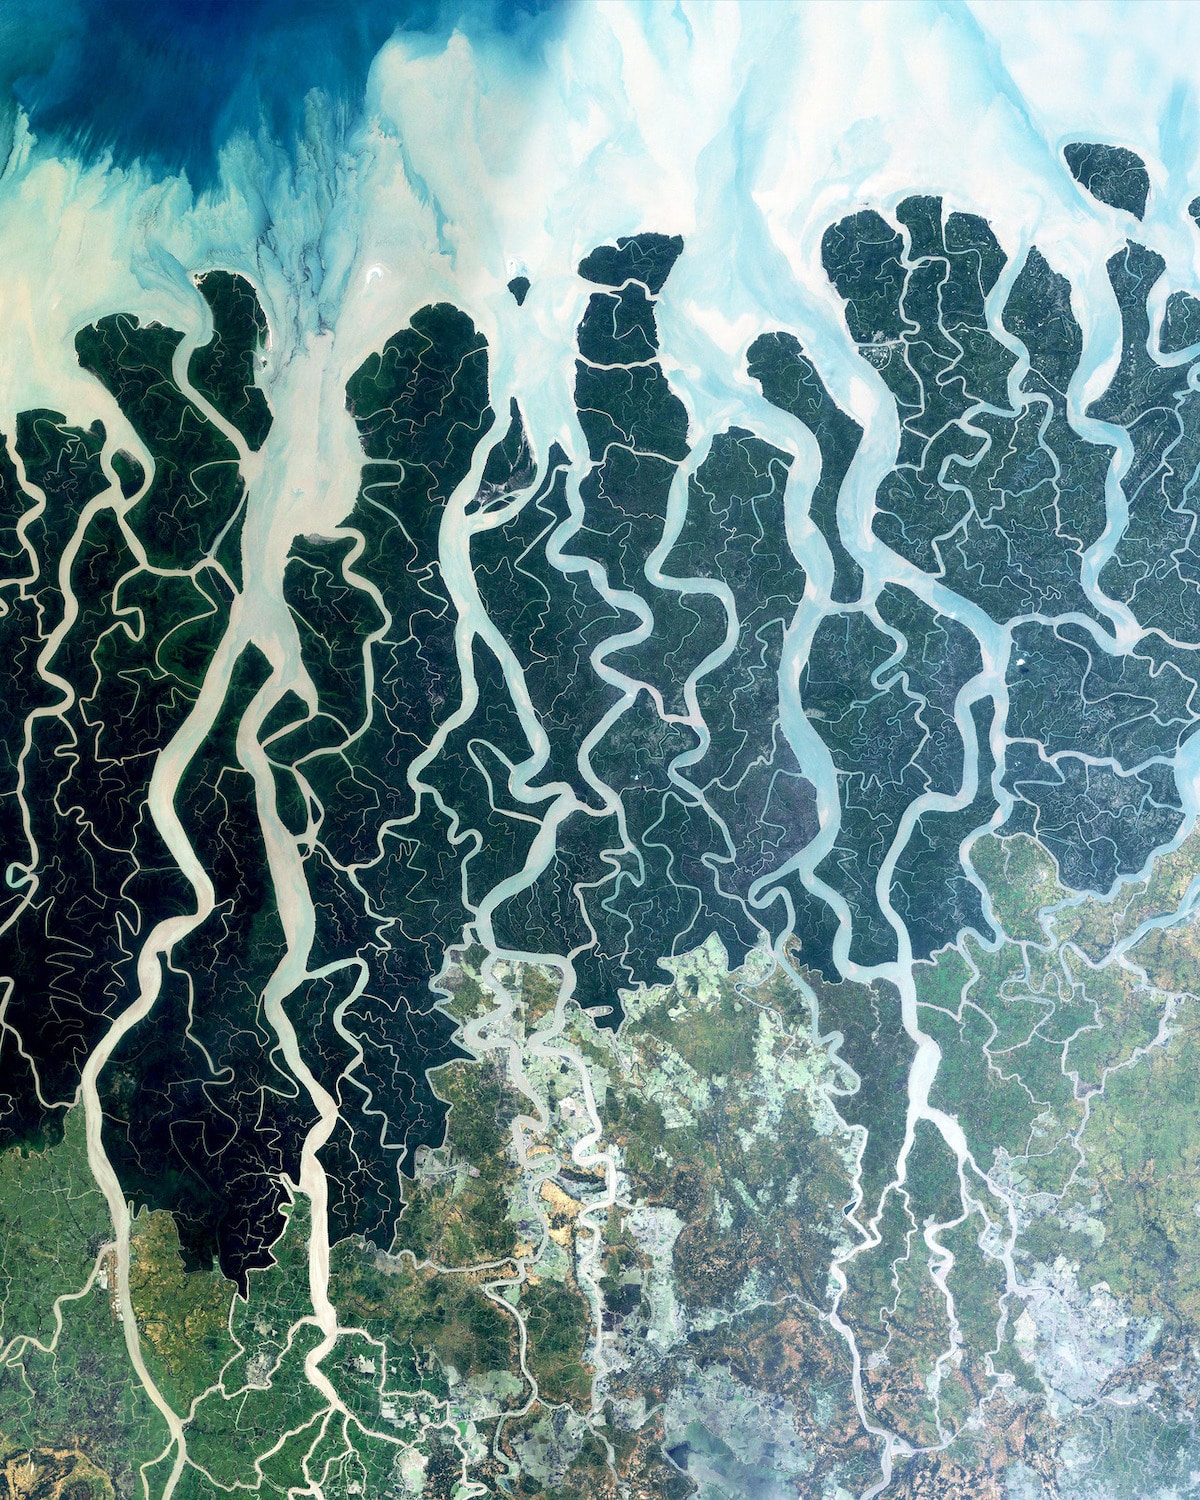 vista aerea de Sundarbans